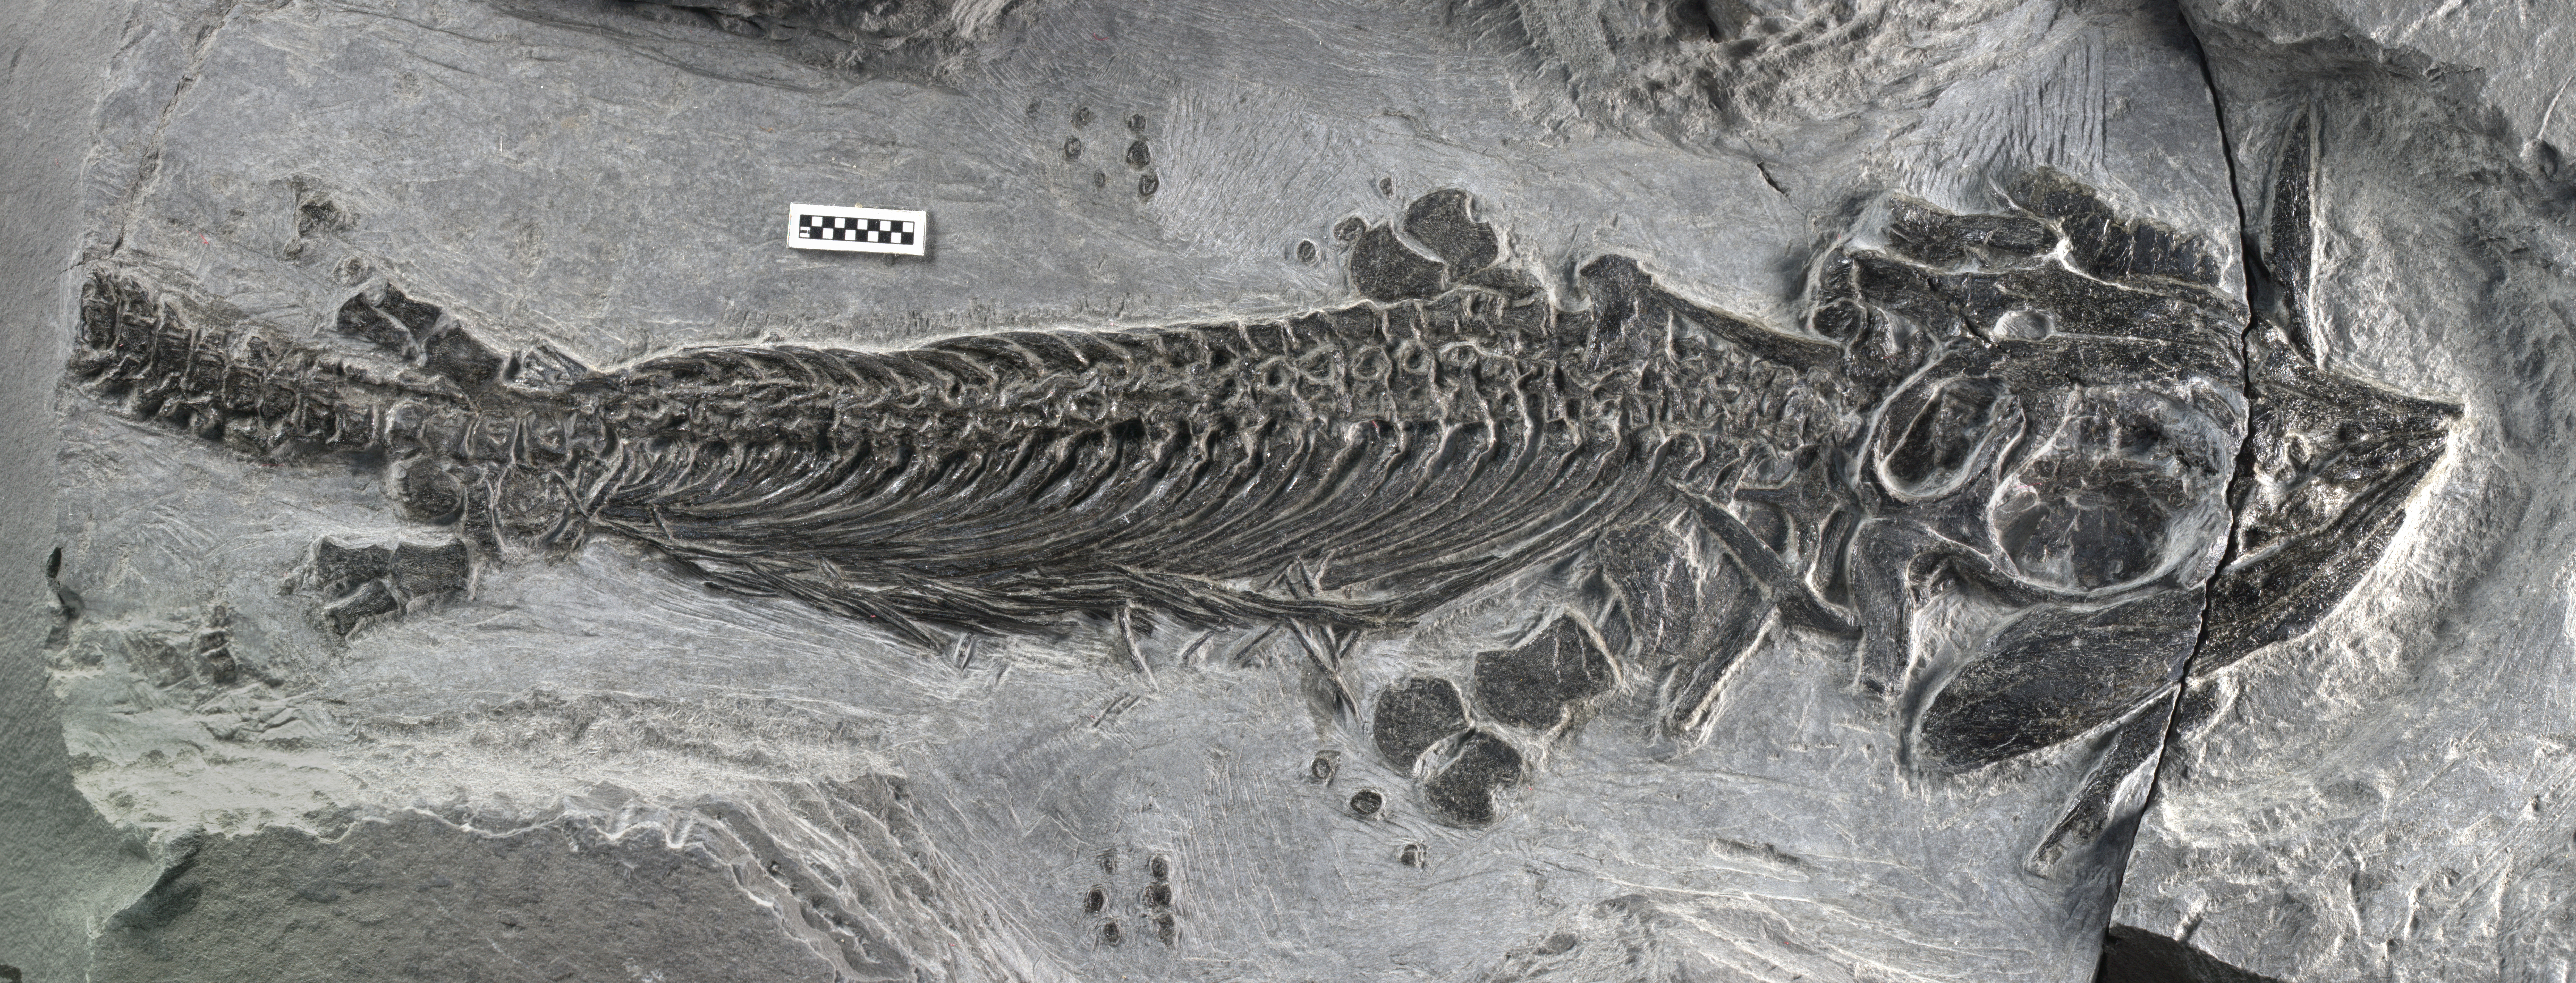 Fossil specimen of Cartorhynchus